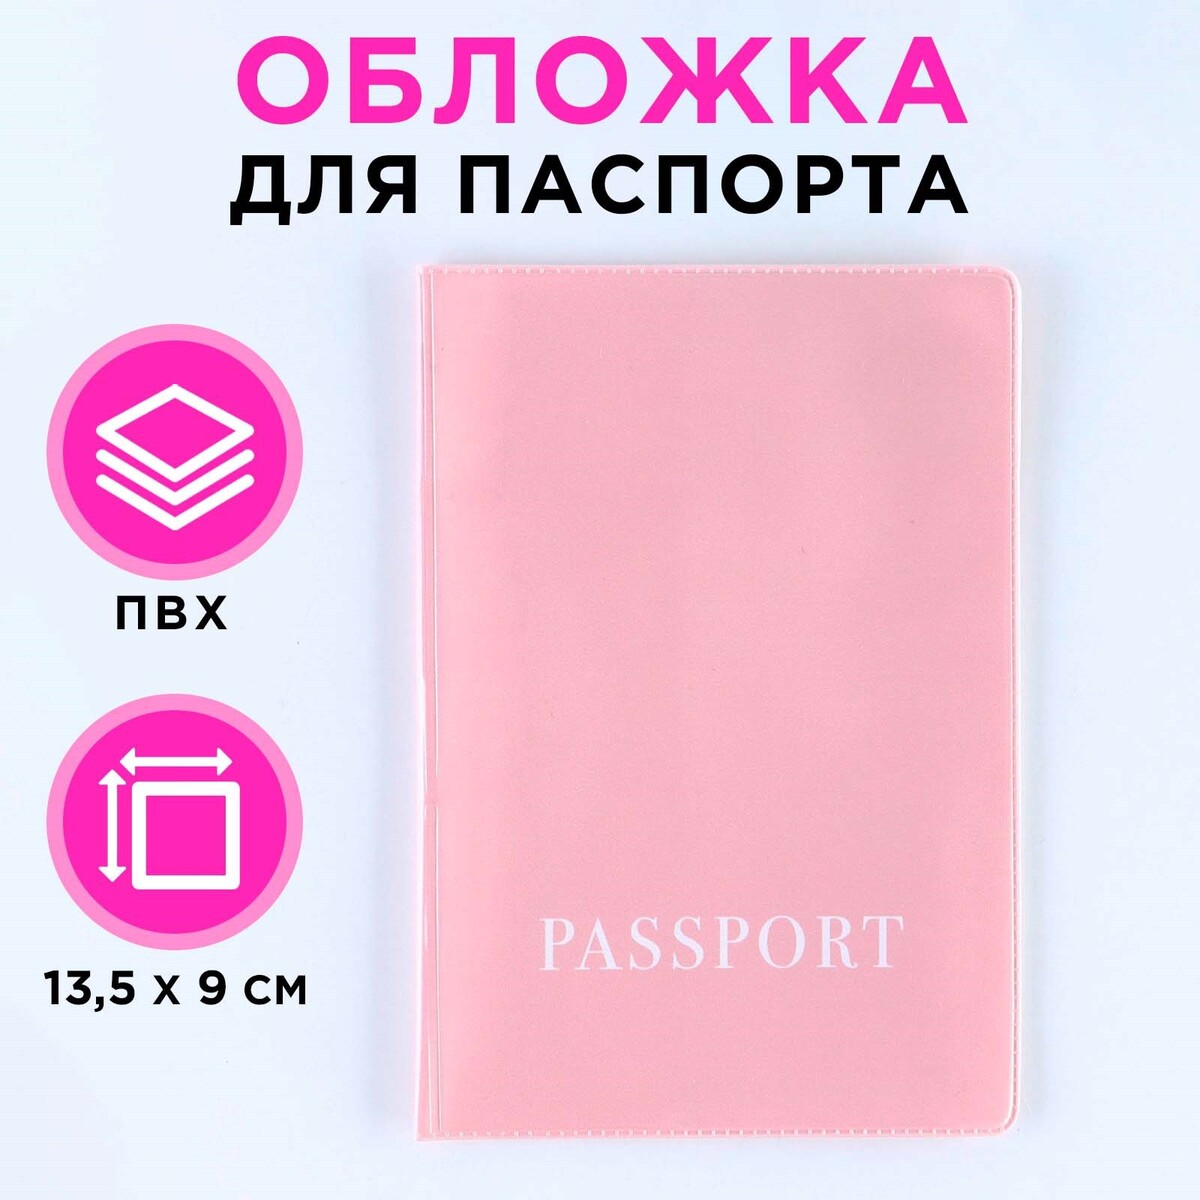 Обложка для паспорта, пвх, оттенок пыльная роза No brand